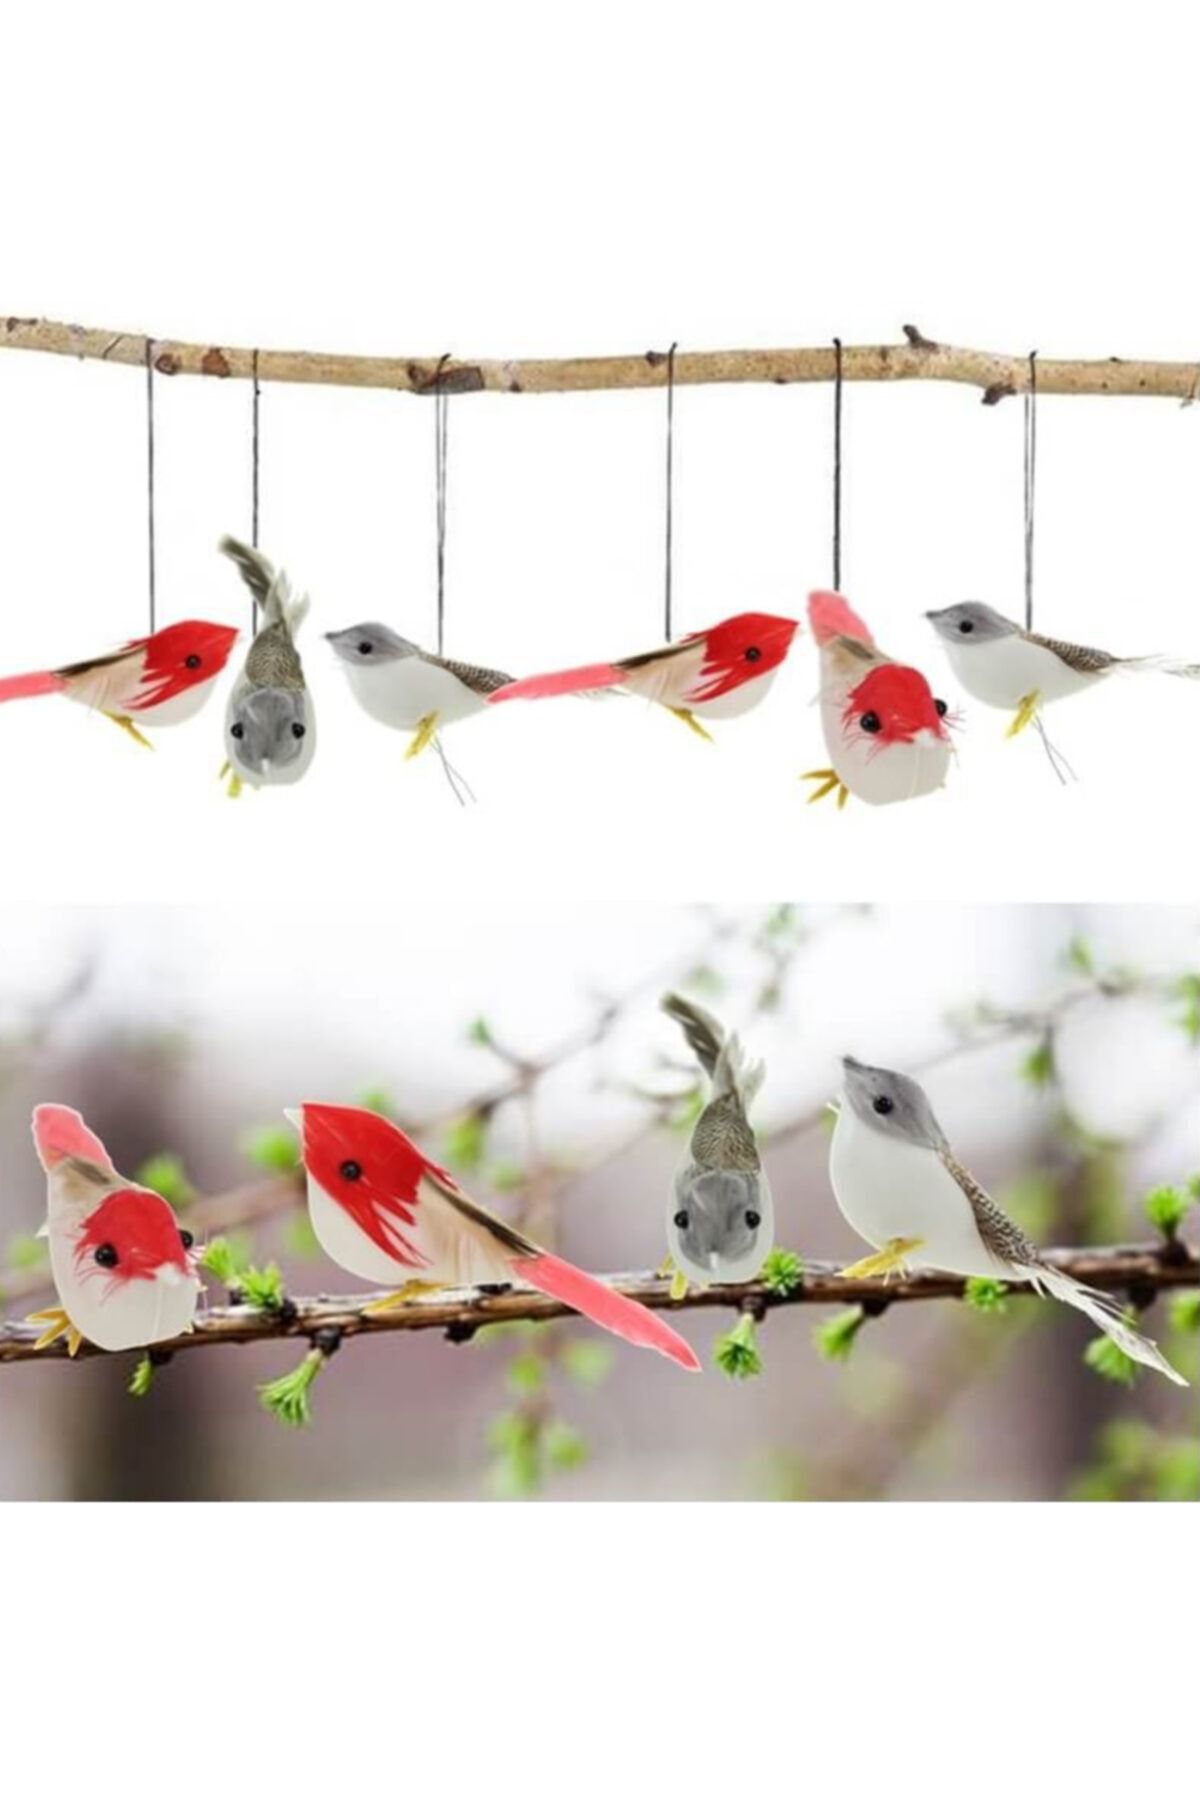 Elysian Renkli Yapay Kuşlar 12 Adet Mini Kuş Ağaç Saksı Süsleri Dekoratif Nişan Malzemeleri Süslemeleri